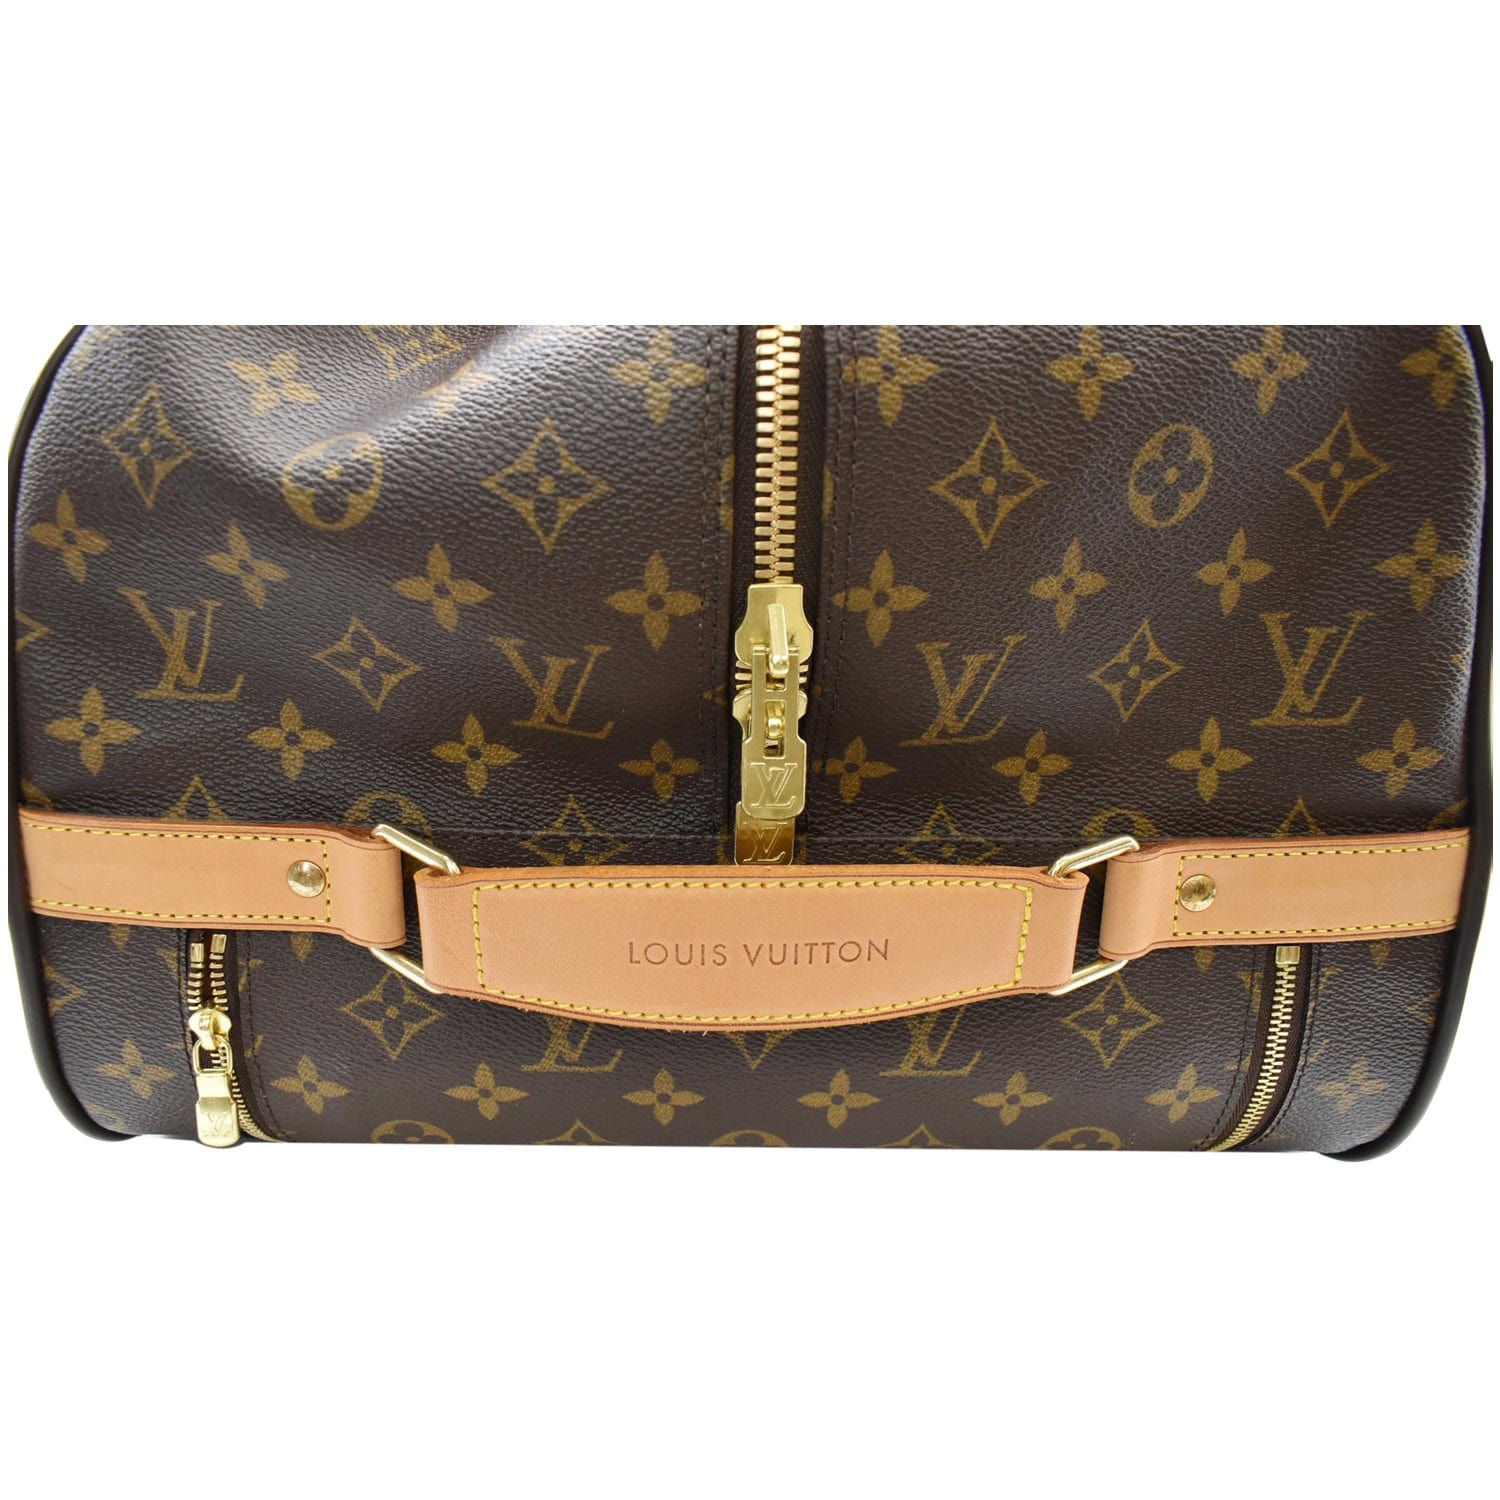 Louis Vuitton Eole Suitcase 389693, UhfmrShops